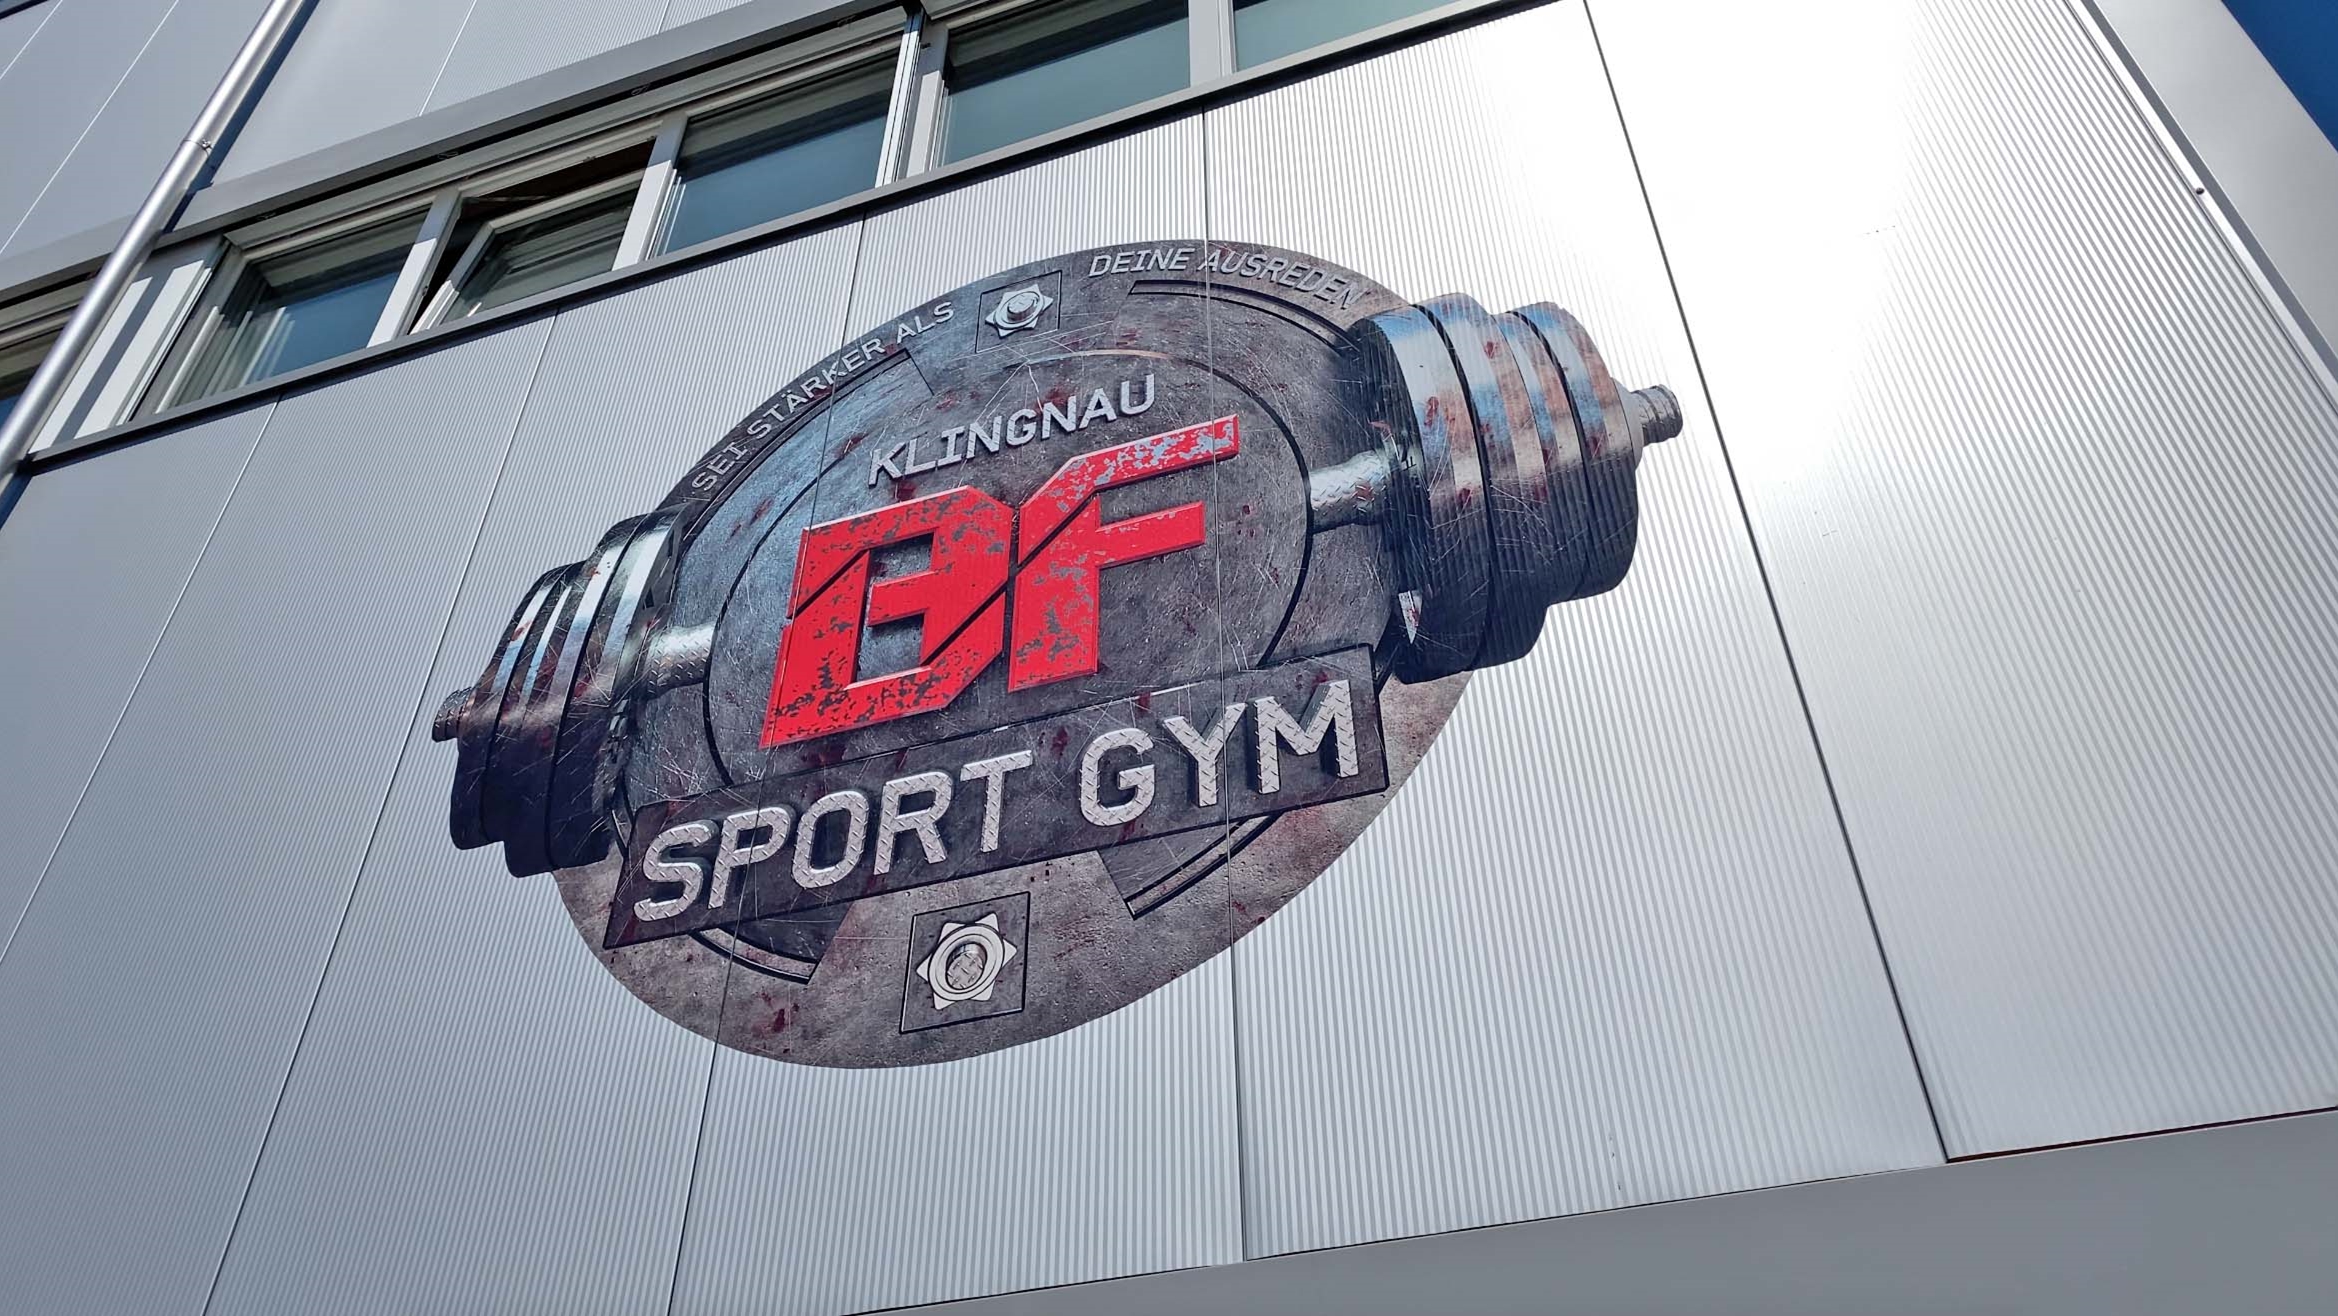 Miniaturbild BF Sport Gym